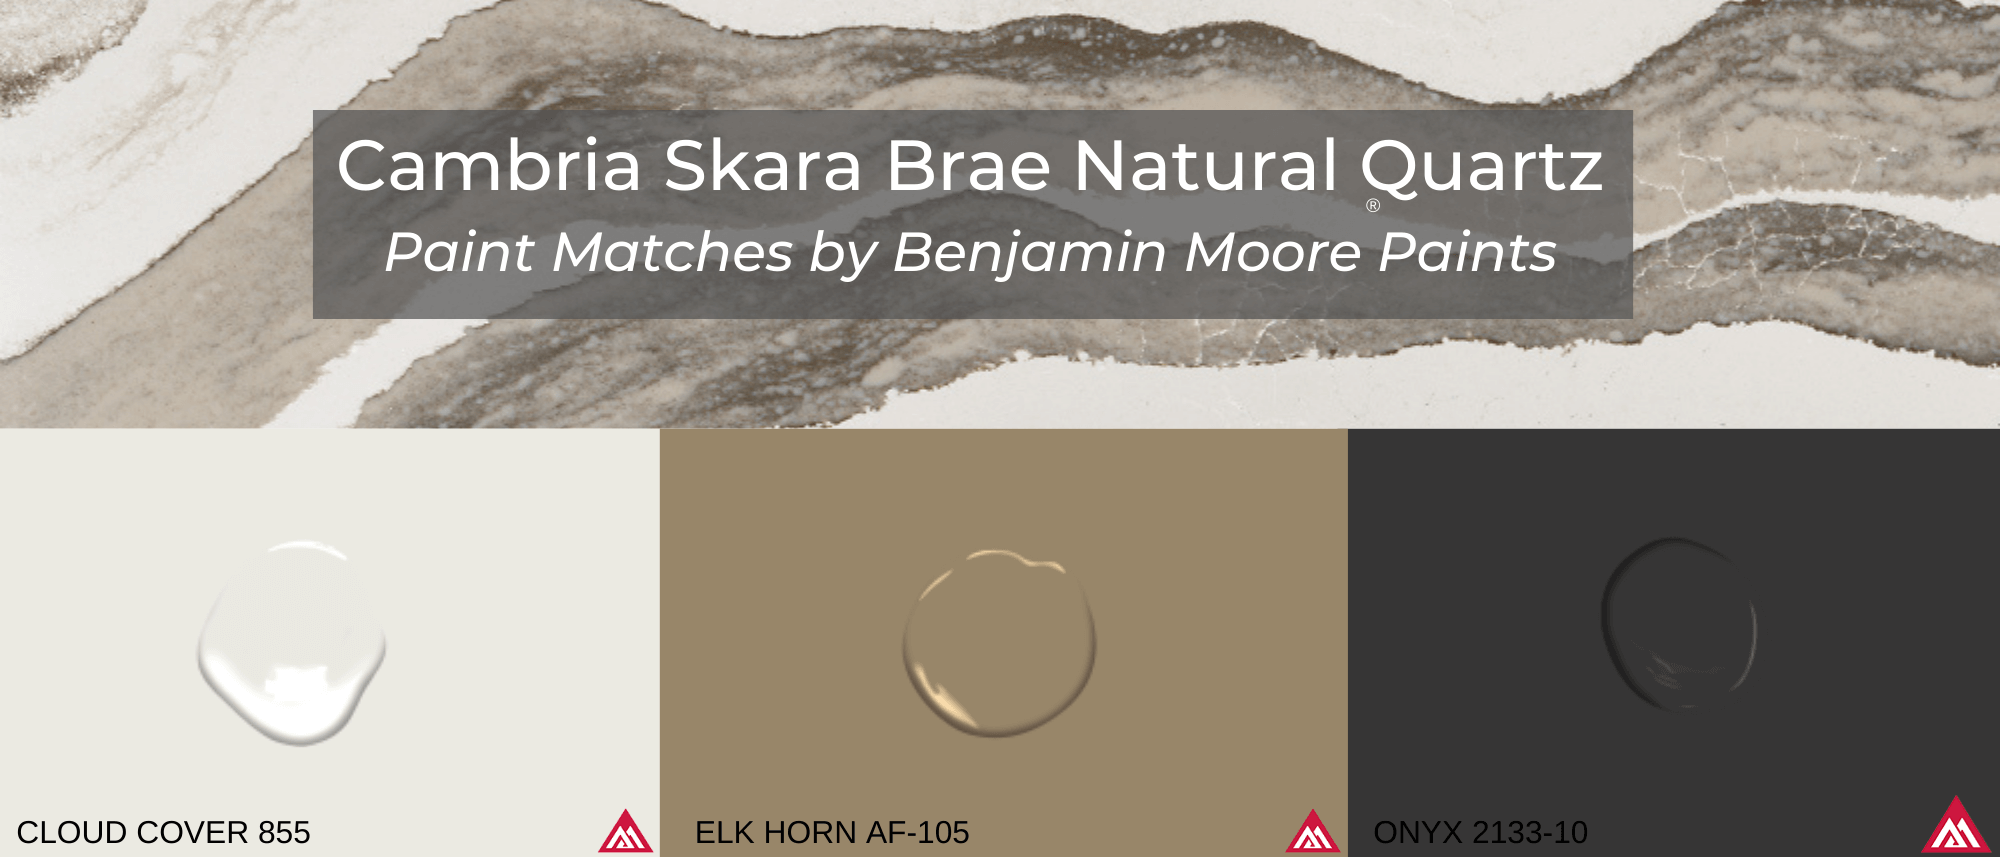 Skara Brae Cambria Quartz Paint Match Header - Skara Brae Quartz - Cambria Skara Brae Natural Quartz - Cambria Skara Brae - Skara Brae - Design Spotlight - Benjamin Moore Paint Match - Cloud Cover - Elk Horn - Onyx